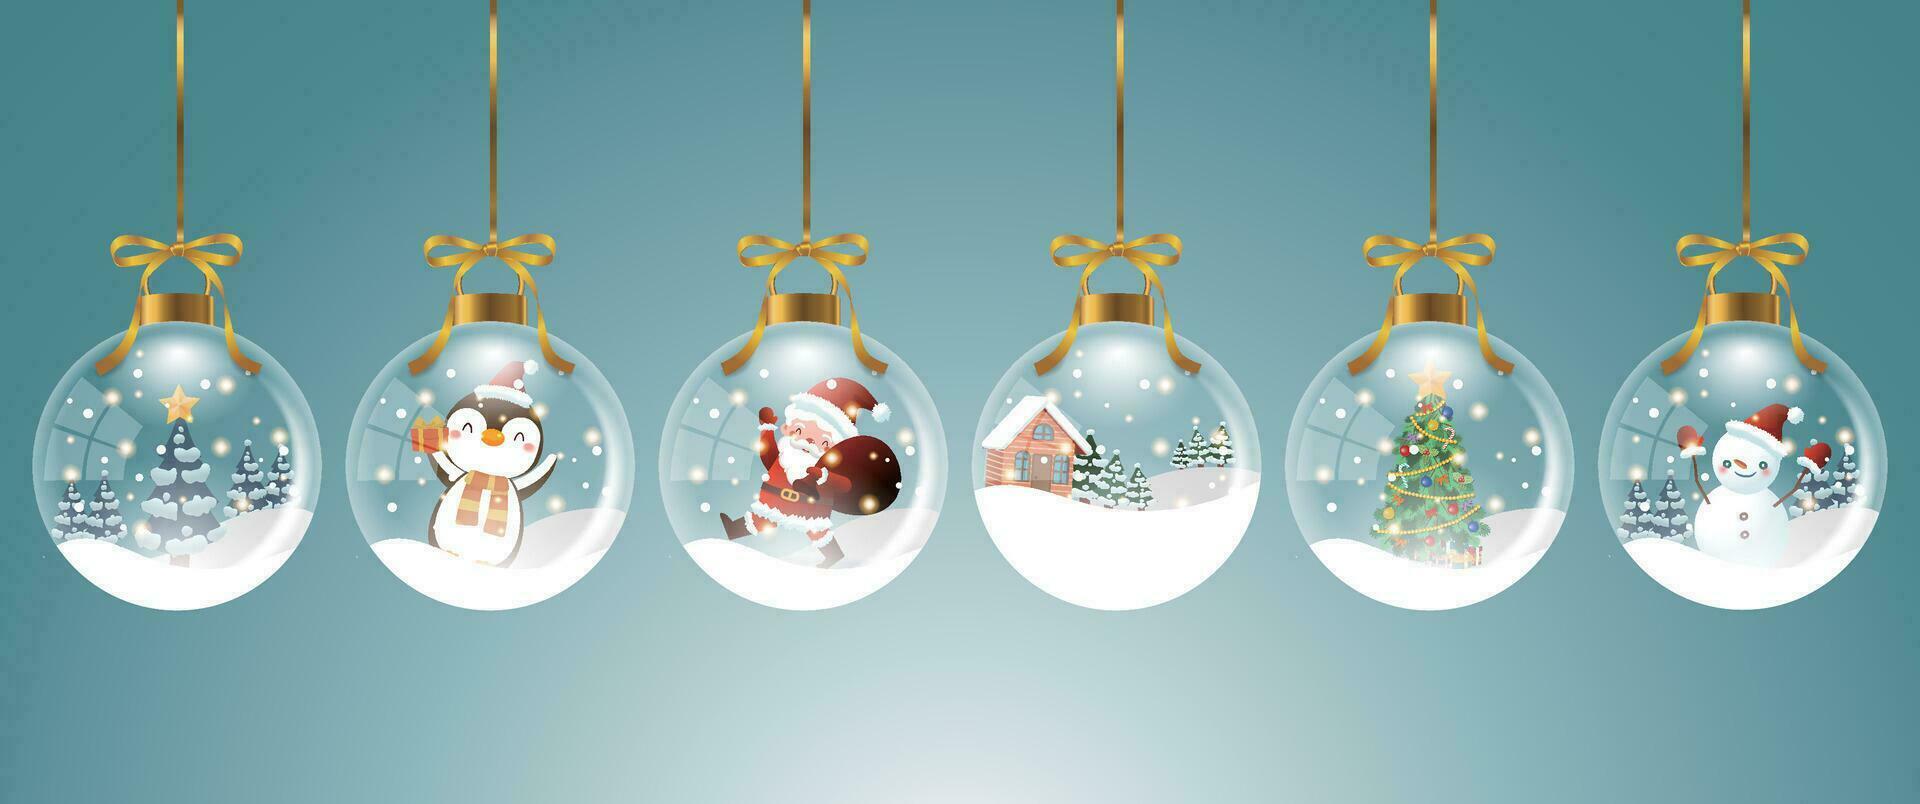 reeks van transparant Kerstmis decoraties met sneeuw decoraties binnen, geschikt voor affiches, kaarten, uitverkoop decoraties vector